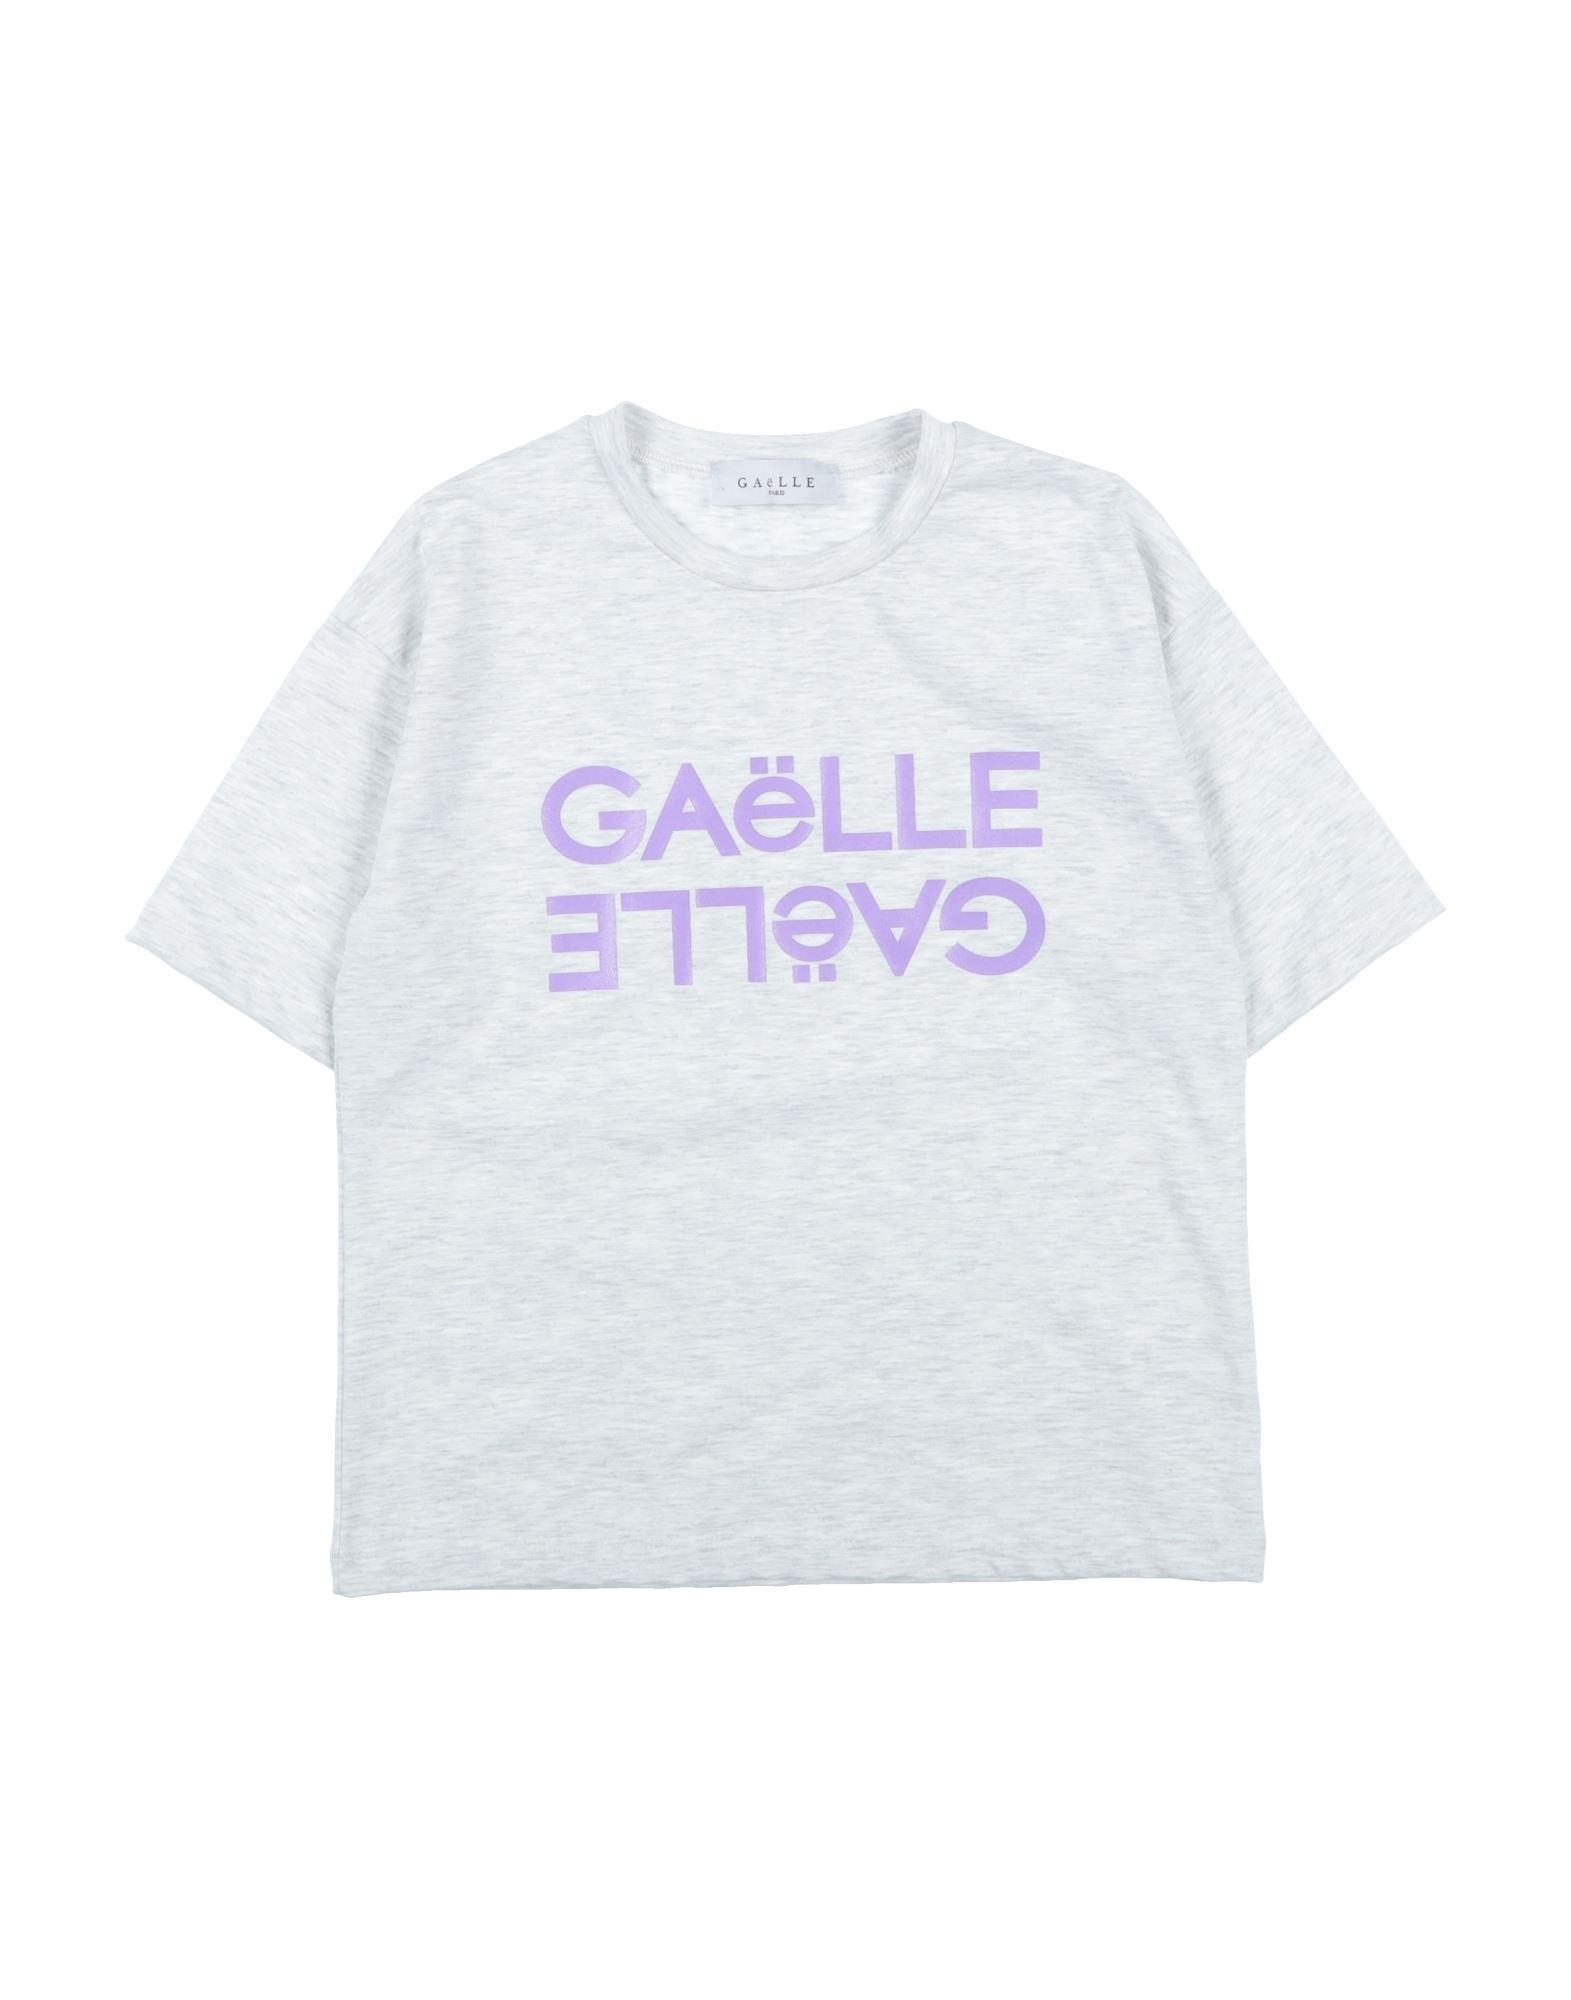 GAëLLE Paris T-shirts Kinder Hellgrau von GAëLLE Paris